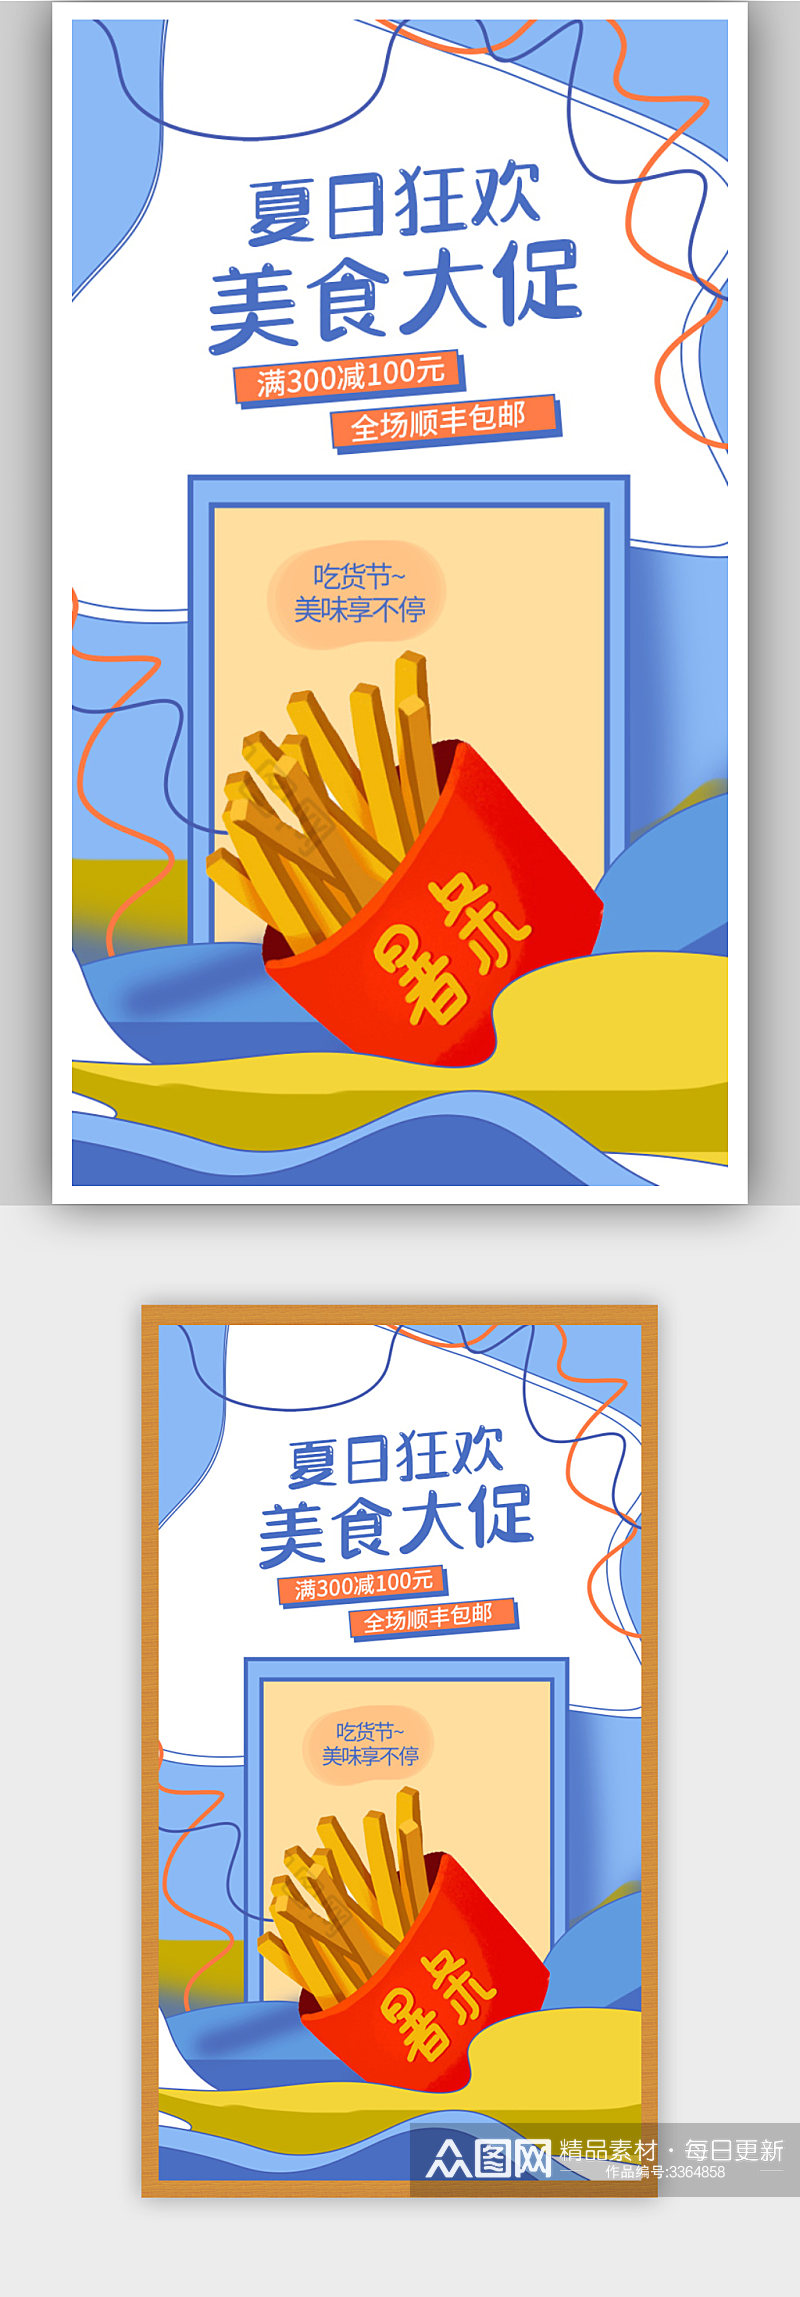 蓝色清新卡通手绘食品零食促销海报素材